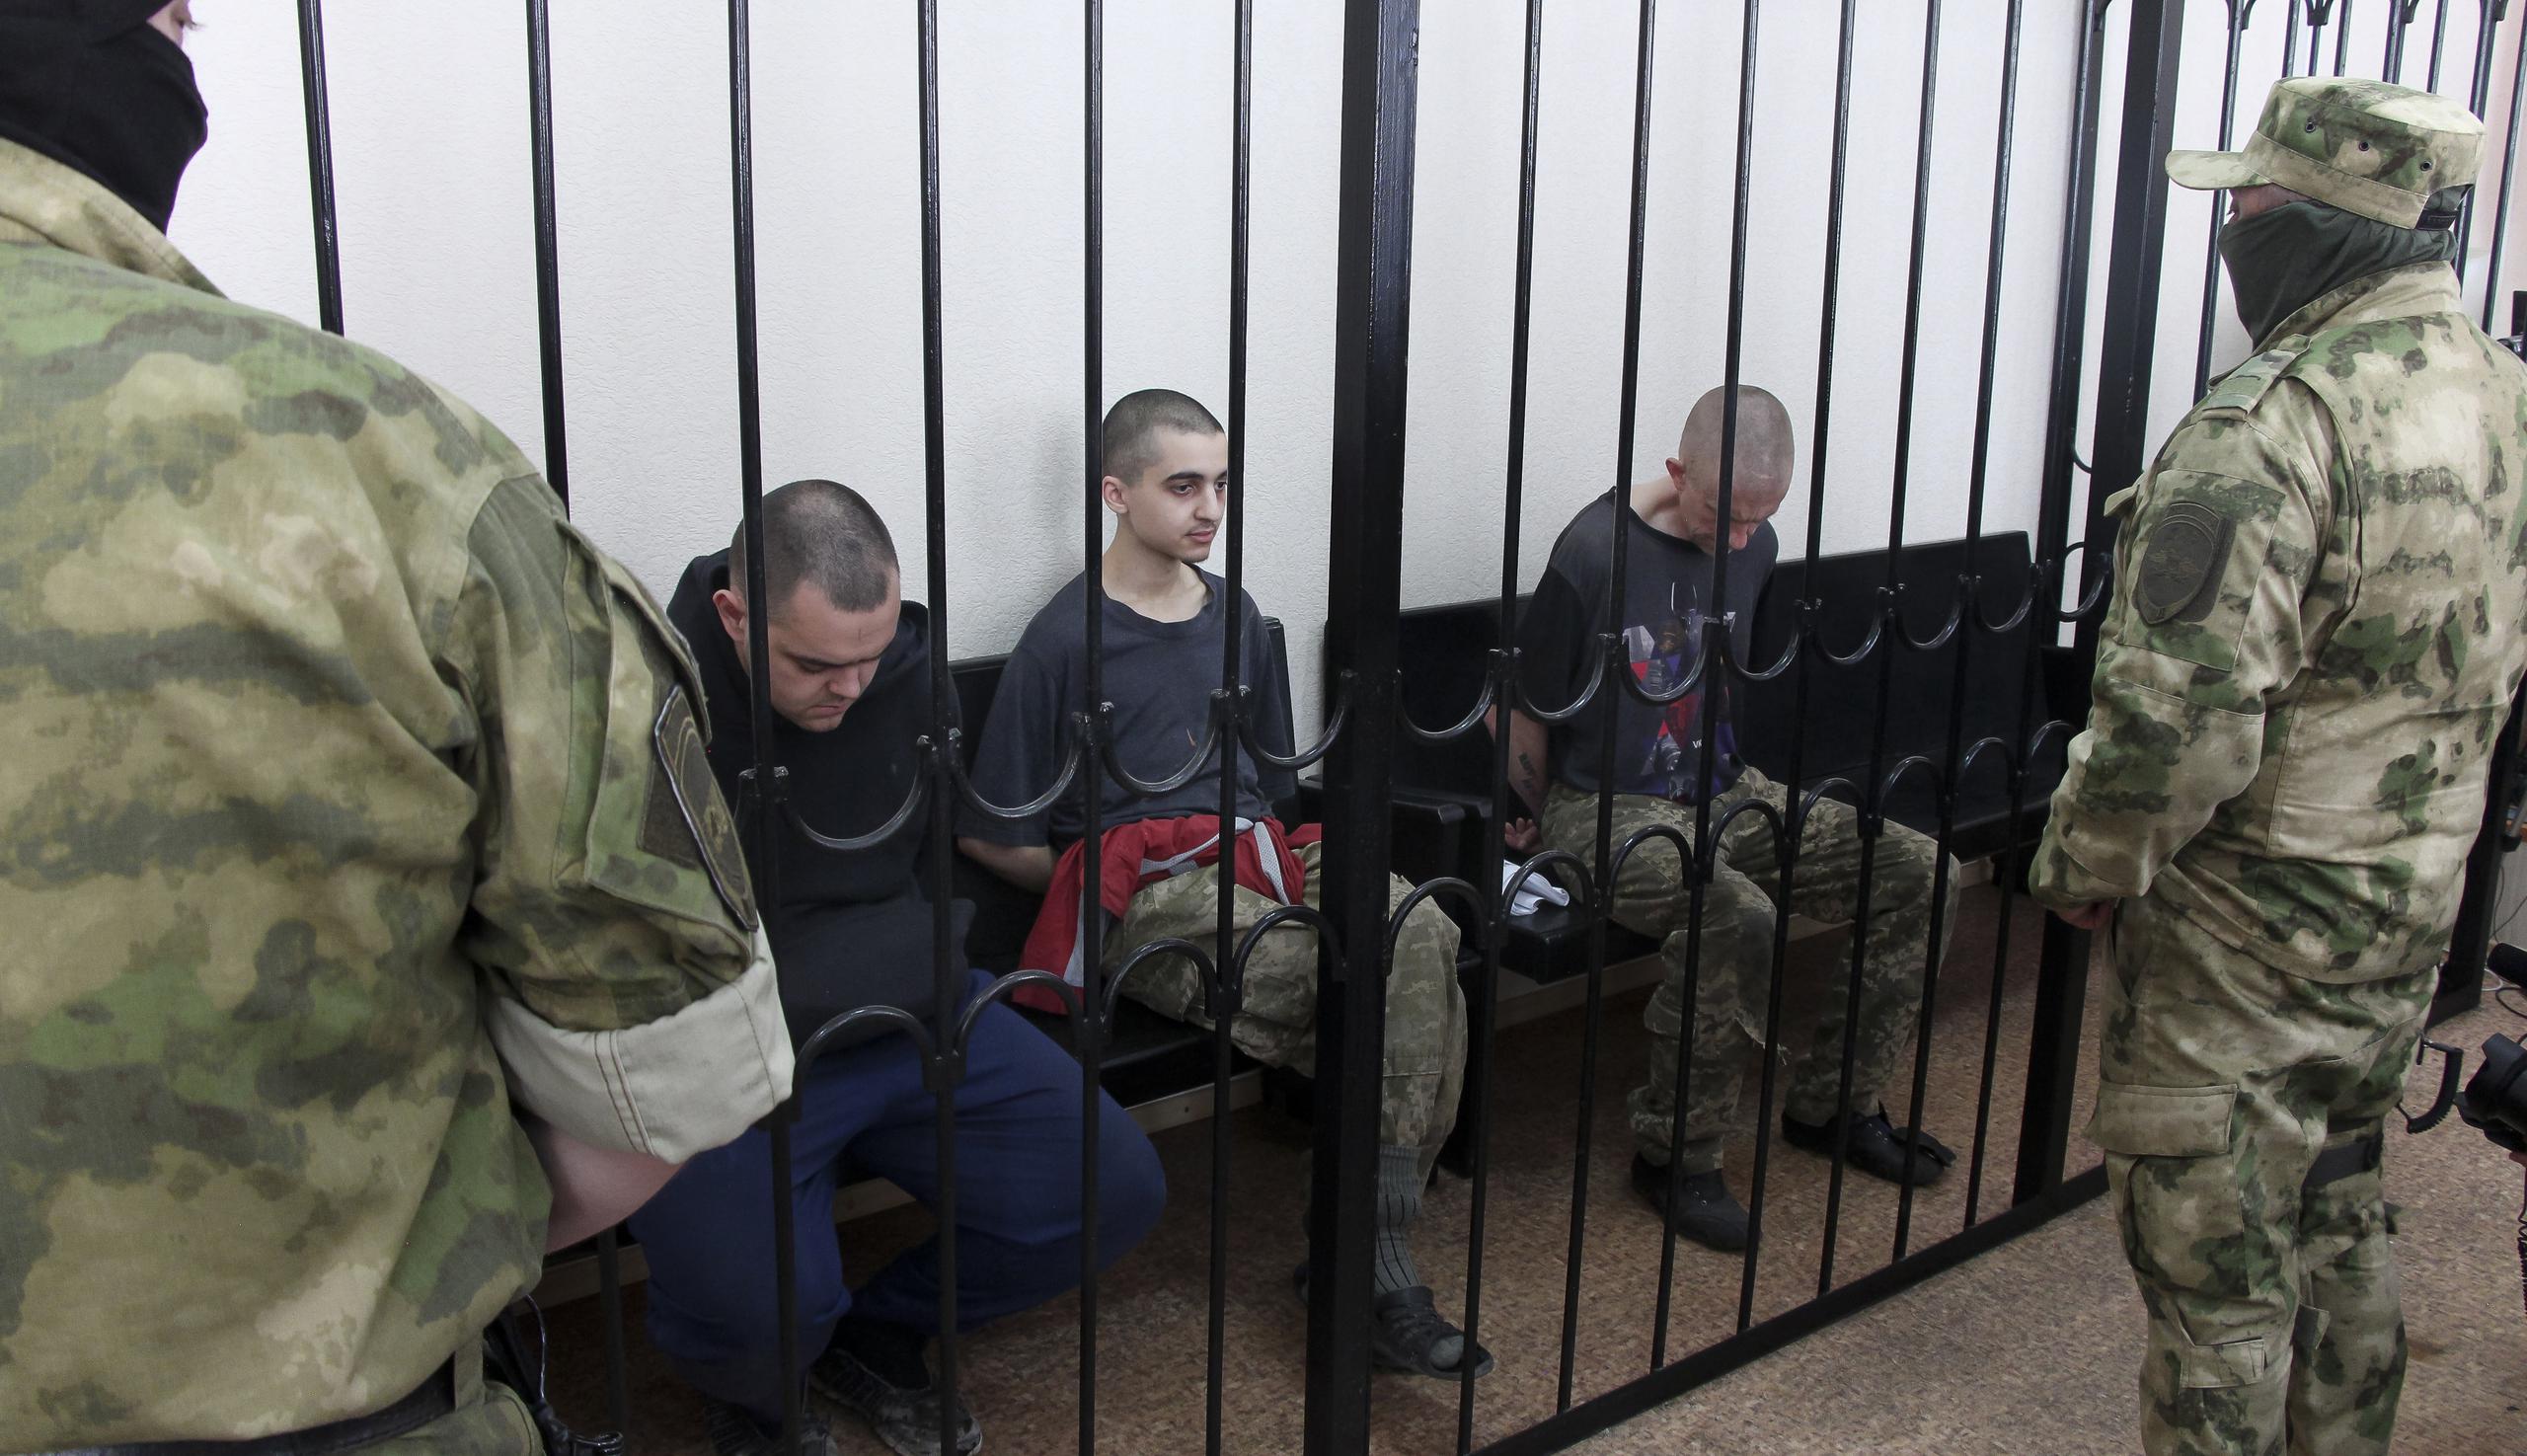 Dos ciudadanos británicos, Aiden Aslin (izquierda) y Shaun Pinner (derecha), y el marroquí Saaudun Brahim (centro) se sientan tras las rejas en una sala de audiencias en Donetsk, en el territorio que está bajo el control del Gobierno de la República Popular de Donetsk, en el este de Ucrania. Jueves, 9 de junio de 2022. Los dos ciudadanos británicos y un marroquí han sido condenados a muerte por rebeldes pro-Moscú en el este de Ucrania por luchar del lado de Ucrania. Los tres hombres lucharon junto a las tropas ucranianas y se rindieron a las fuerzas rusas hace semanas. (Foto AP)